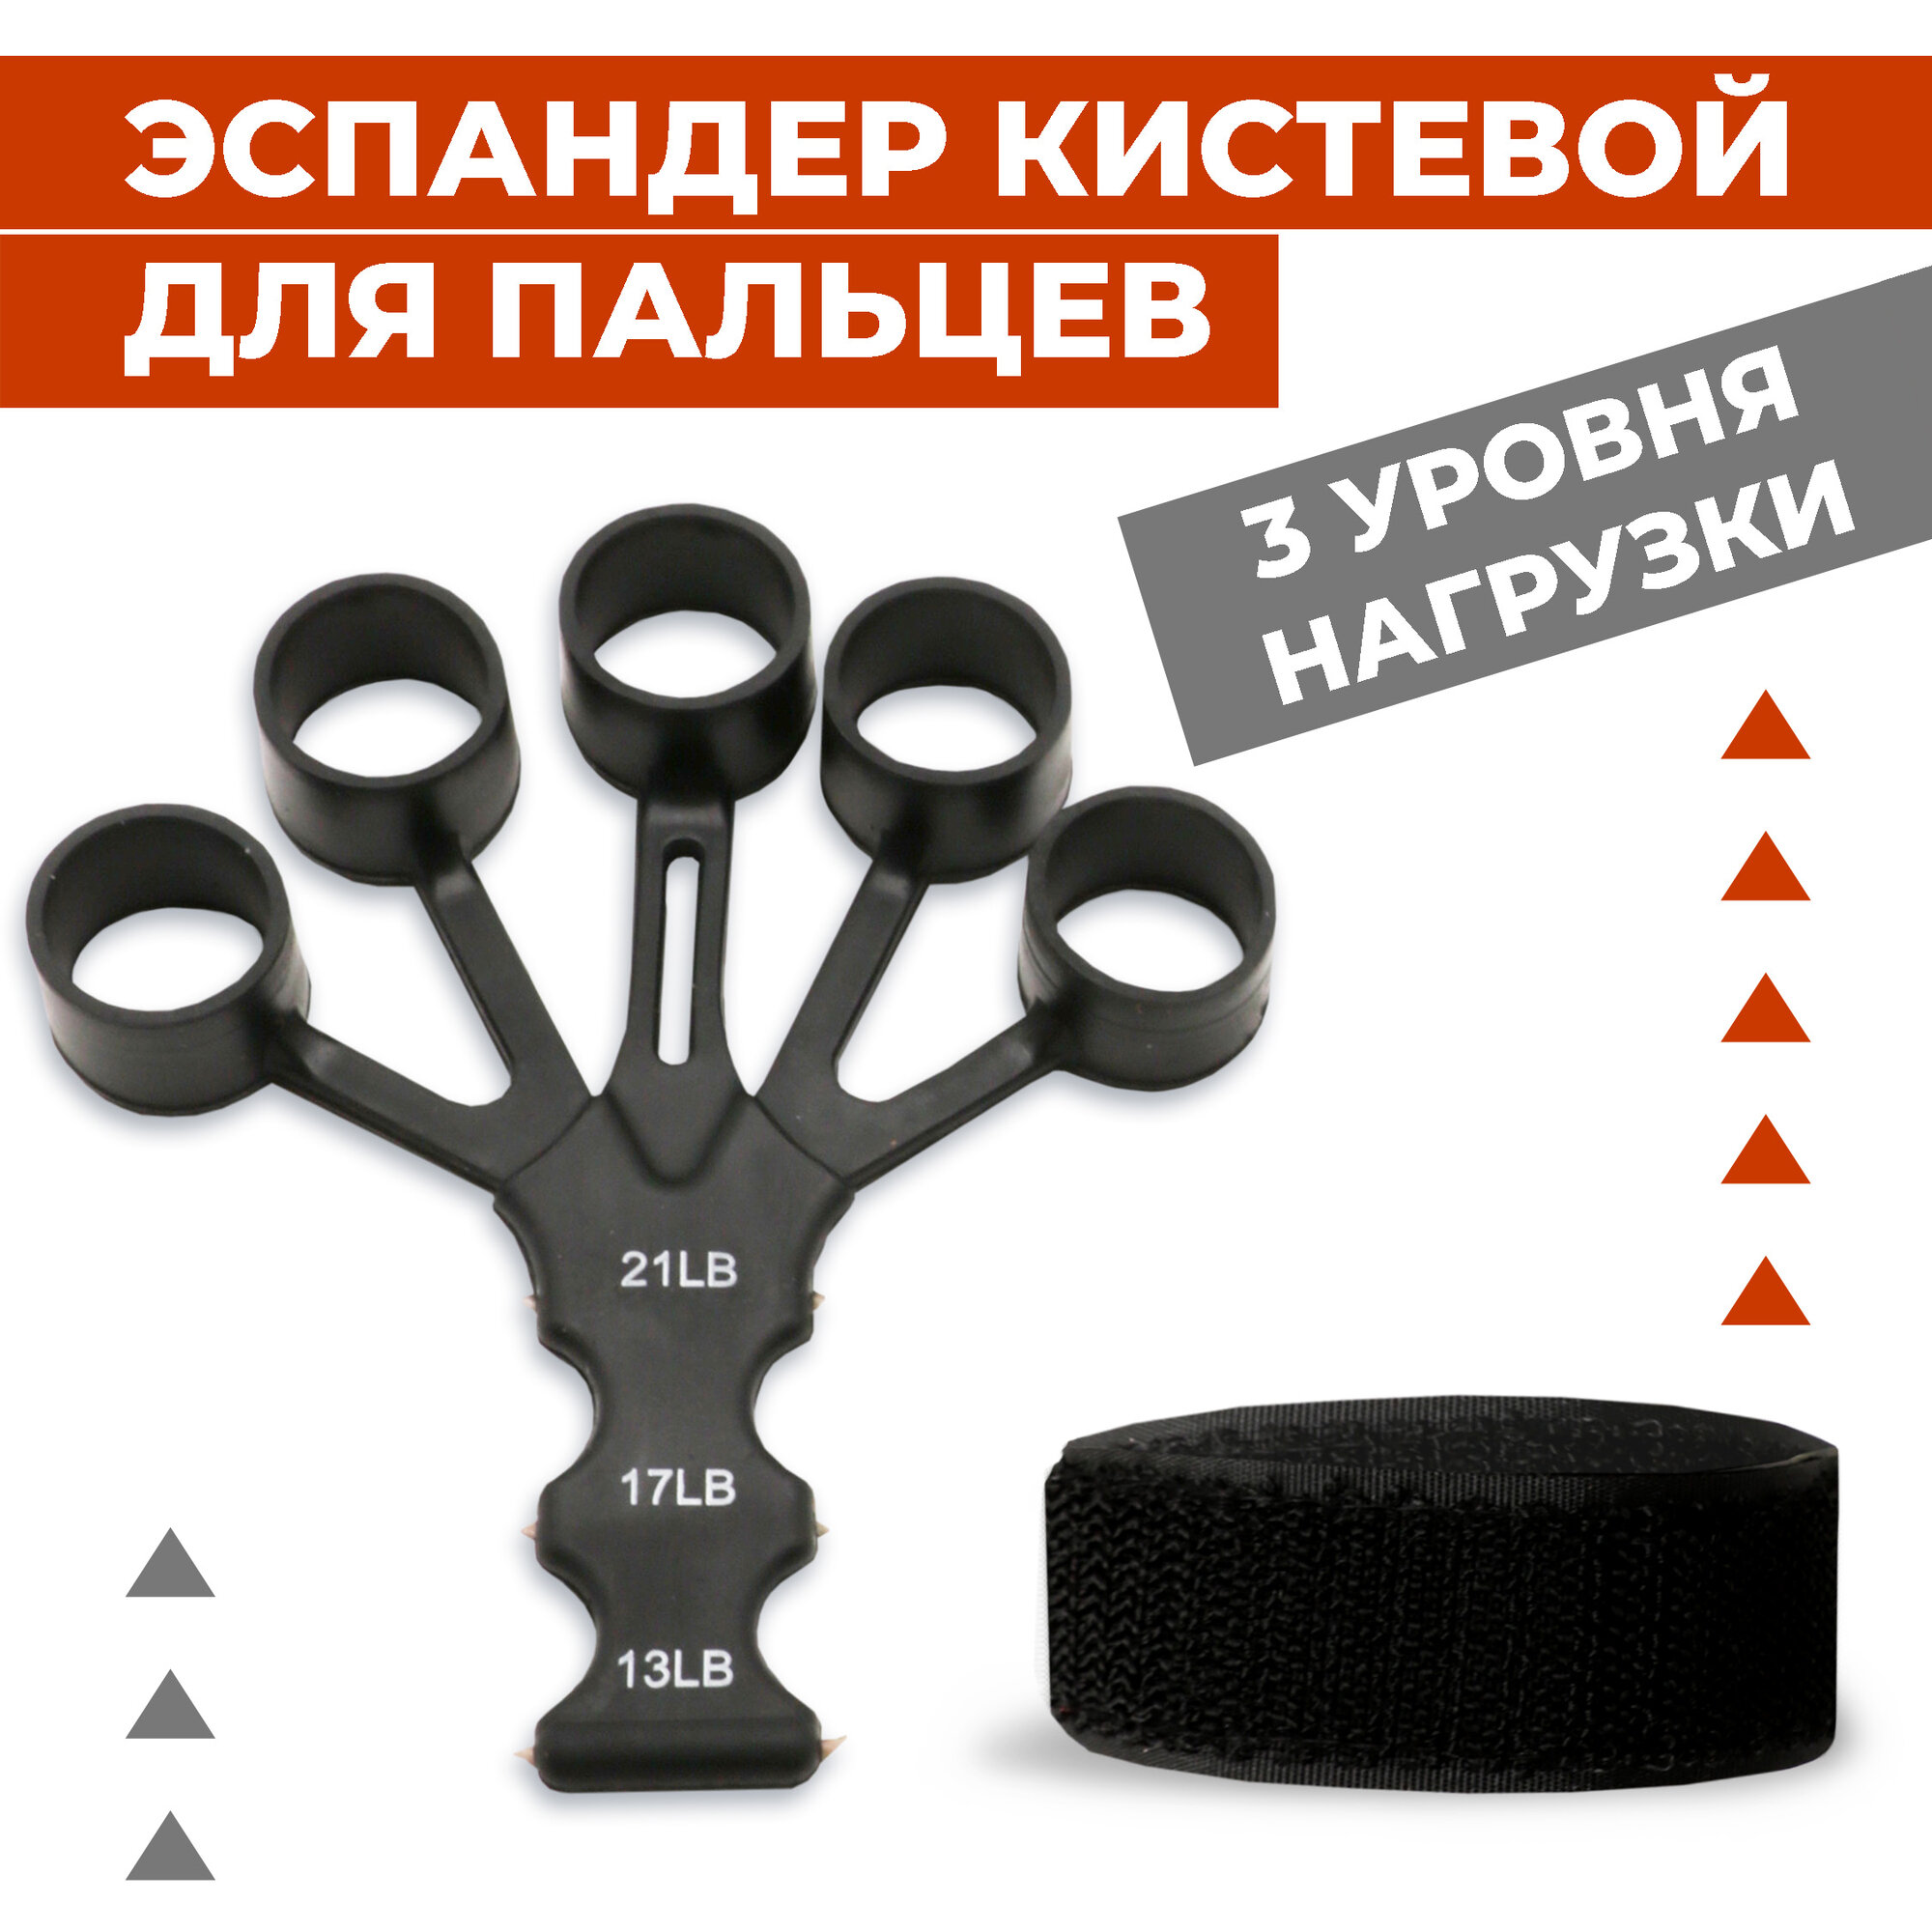 Эспандер кистевой Boomshakalaka, тренажер для пальцев, универсальный, 3 уровня нагрузки: 5,9 кг; 7,7 кг; 9,5 кг